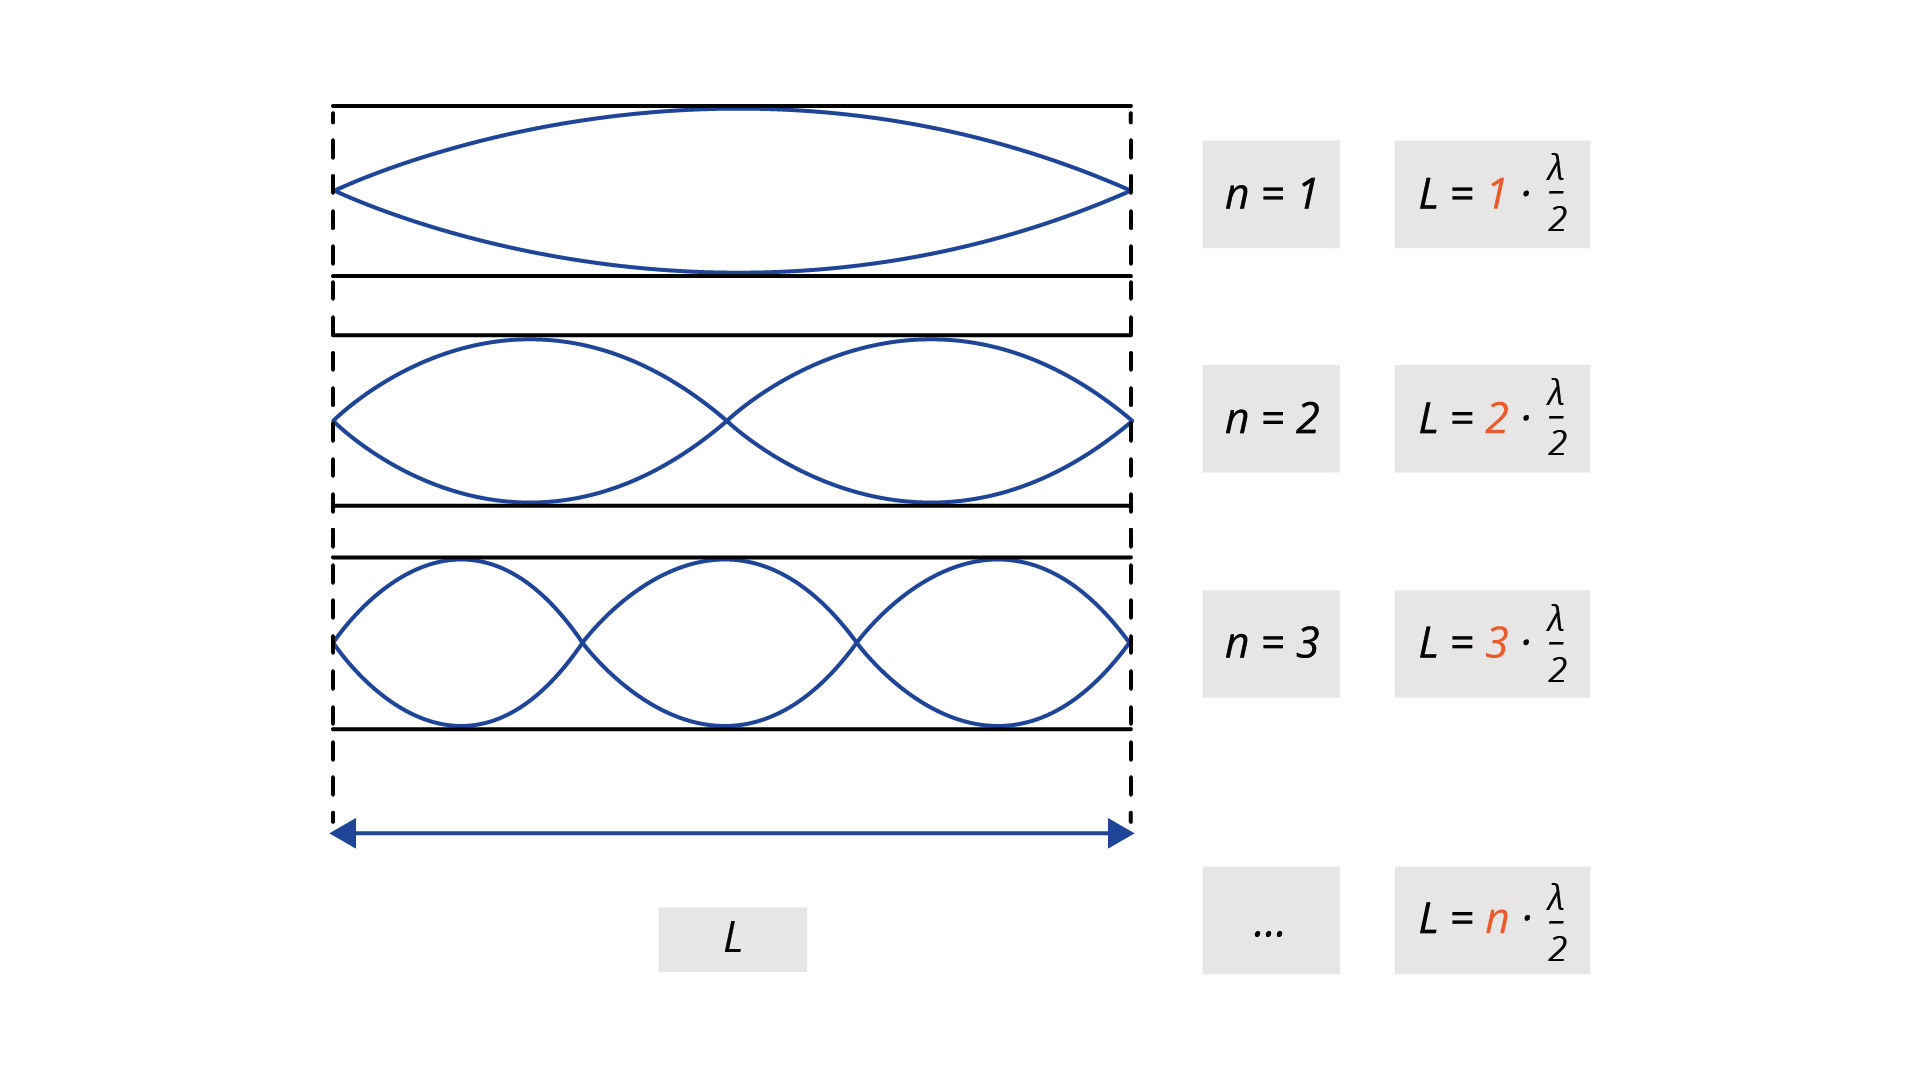 Na ilustracji narysowane są dwie przerywane pionowe i zaznaczona odległość L. Między nimi od góry narysowane są dwie linie poziome oraz dwie krzywe, których końce są na liniach pionowych, w środku odległości między liniami poziomymi. Środki krzywych stykają się w liniami poziomymi w połowie długości L. Po prawej stronie rysunku zapis n równa się 1, L równa się 1 pomnożyć przez ułamek, lambda przez 2. Poniżej między liniami pionowymi narysowane są dwie linie poziome oraz dwie krzywe, których końce są na liniach pionowych, w środku odległości między liniami poziomymi. Środki krzywych przecinają się w połowie długości L, środki części stykają się z liniami poziomymi. Po prawej stronie rysunku zapis n równa się 2, L równa się 2 pomnożyć przez ułamek, lambda przez 2. Poniżej między liniami pionowymi narysowane są dwie linie poziome oraz dwie krzywe, których końce są na liniach pionowych, w środku odległości między liniami poziomymi. Krzywe w jednej trzeciej i dwóch trzecich długości L przecinają się, środki części stykają się z liniami poziomymi.. Po prawej stronie rysunku zapis n równa się 3, L równa się 3 pomnożyć przez ułamek, lambda przez 2. Poniżej zapis: … , L równa się n pomnożyć przez ułamek, lambda przez 2.